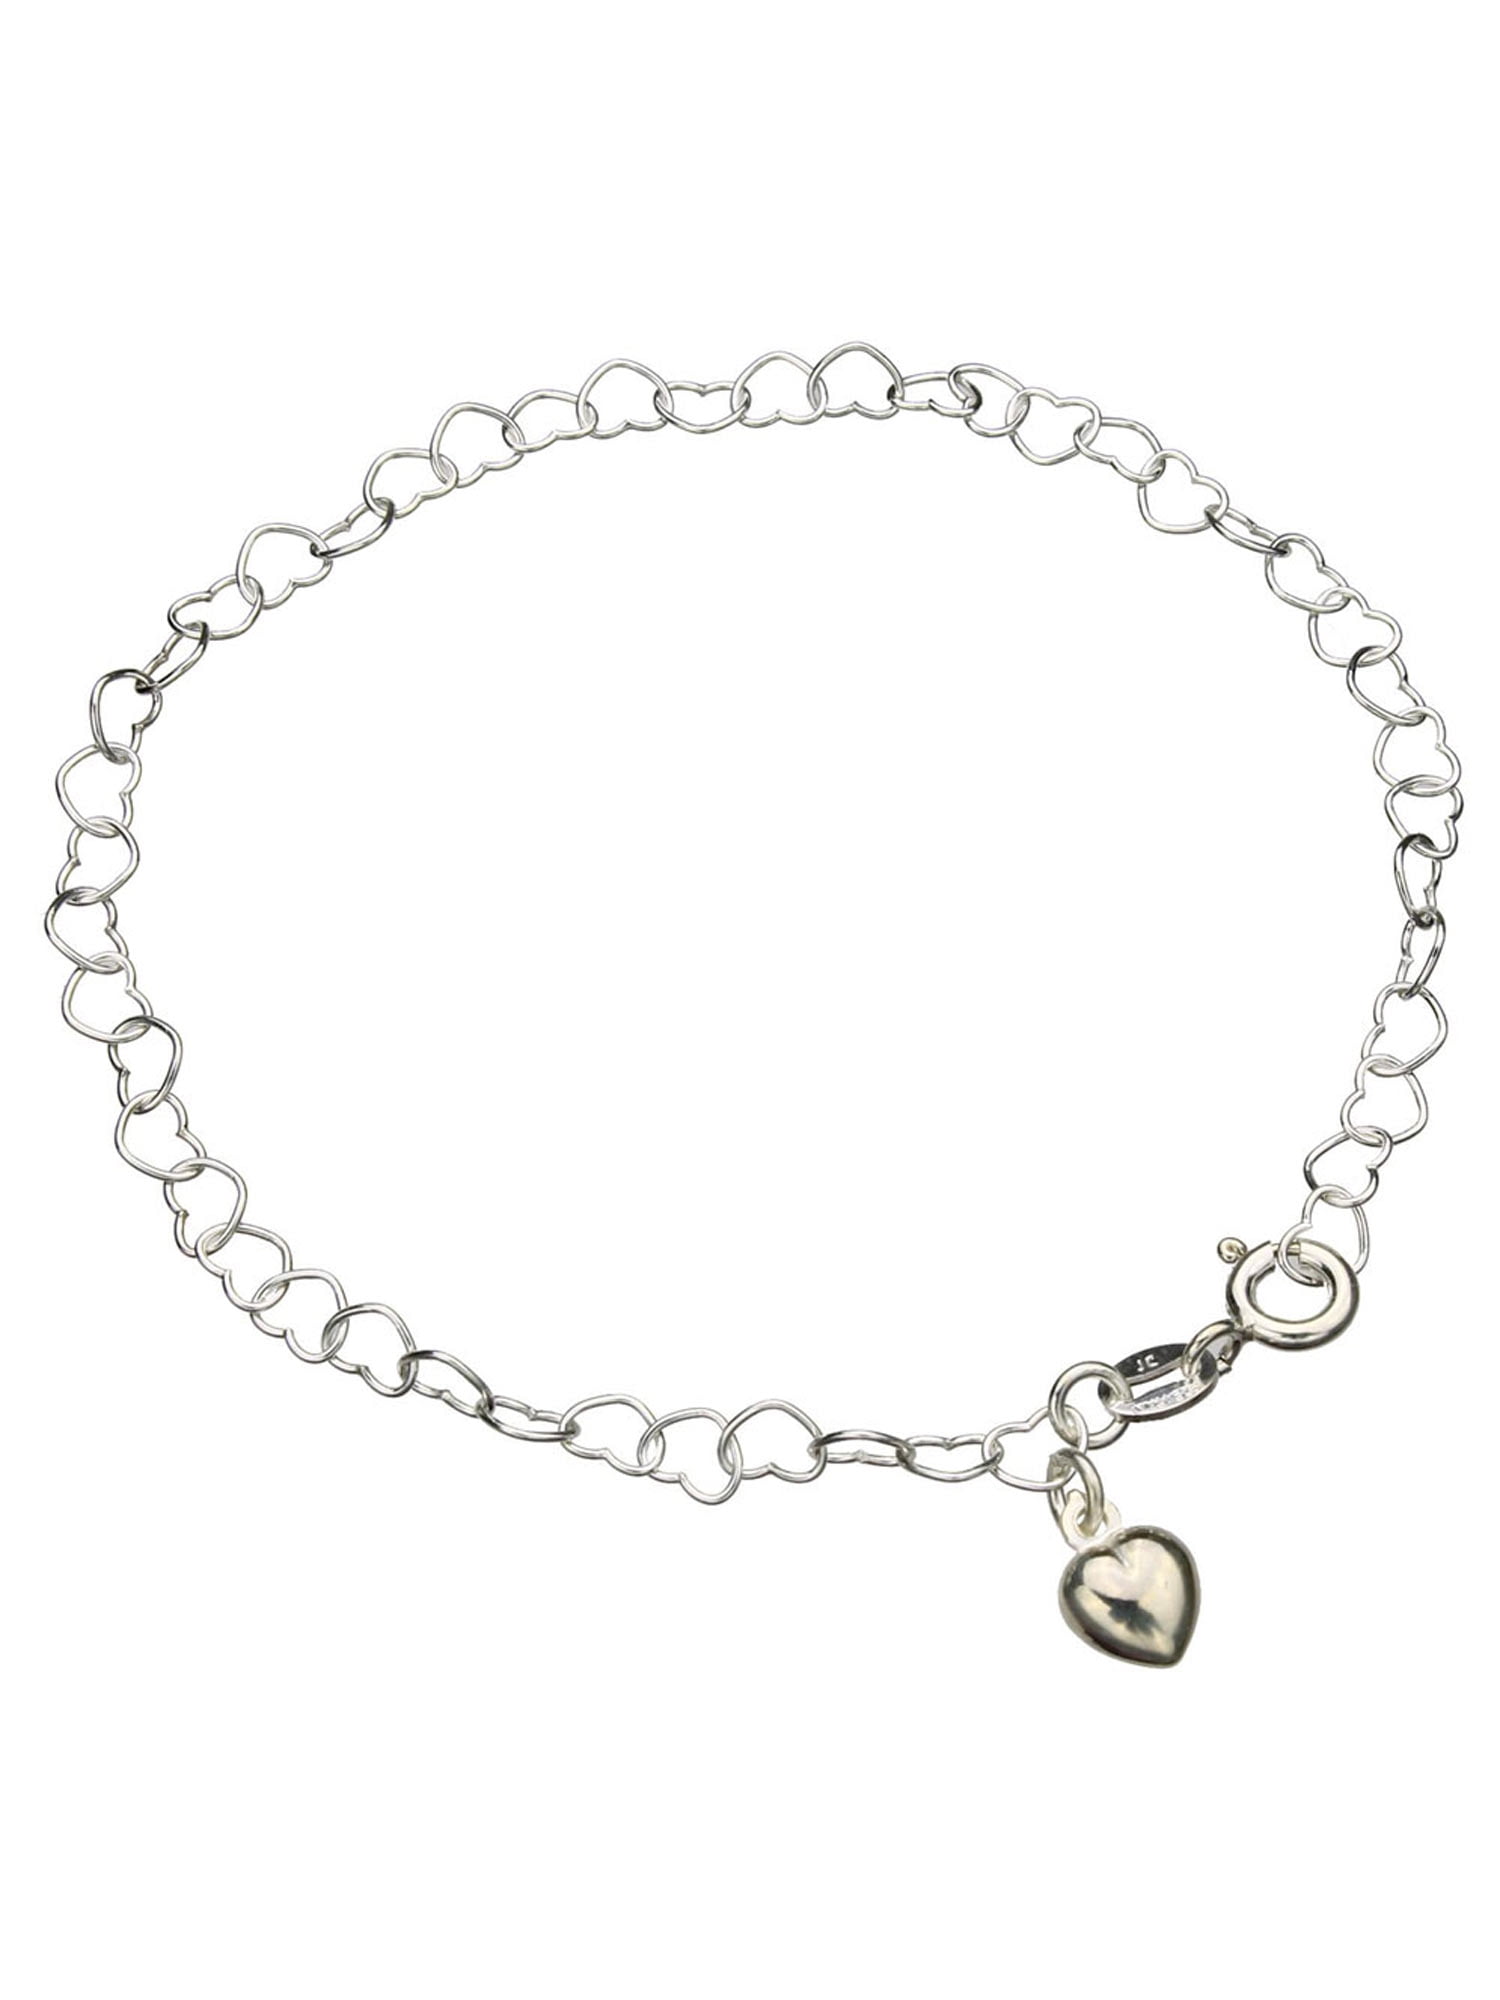 XIAQUJ Personalized 26 in itial Bracelet Copper Heart Letter Woven Bracelet  Heart Charm Bracelet Woven Bracelet for Men Women Girls Bracelets B 